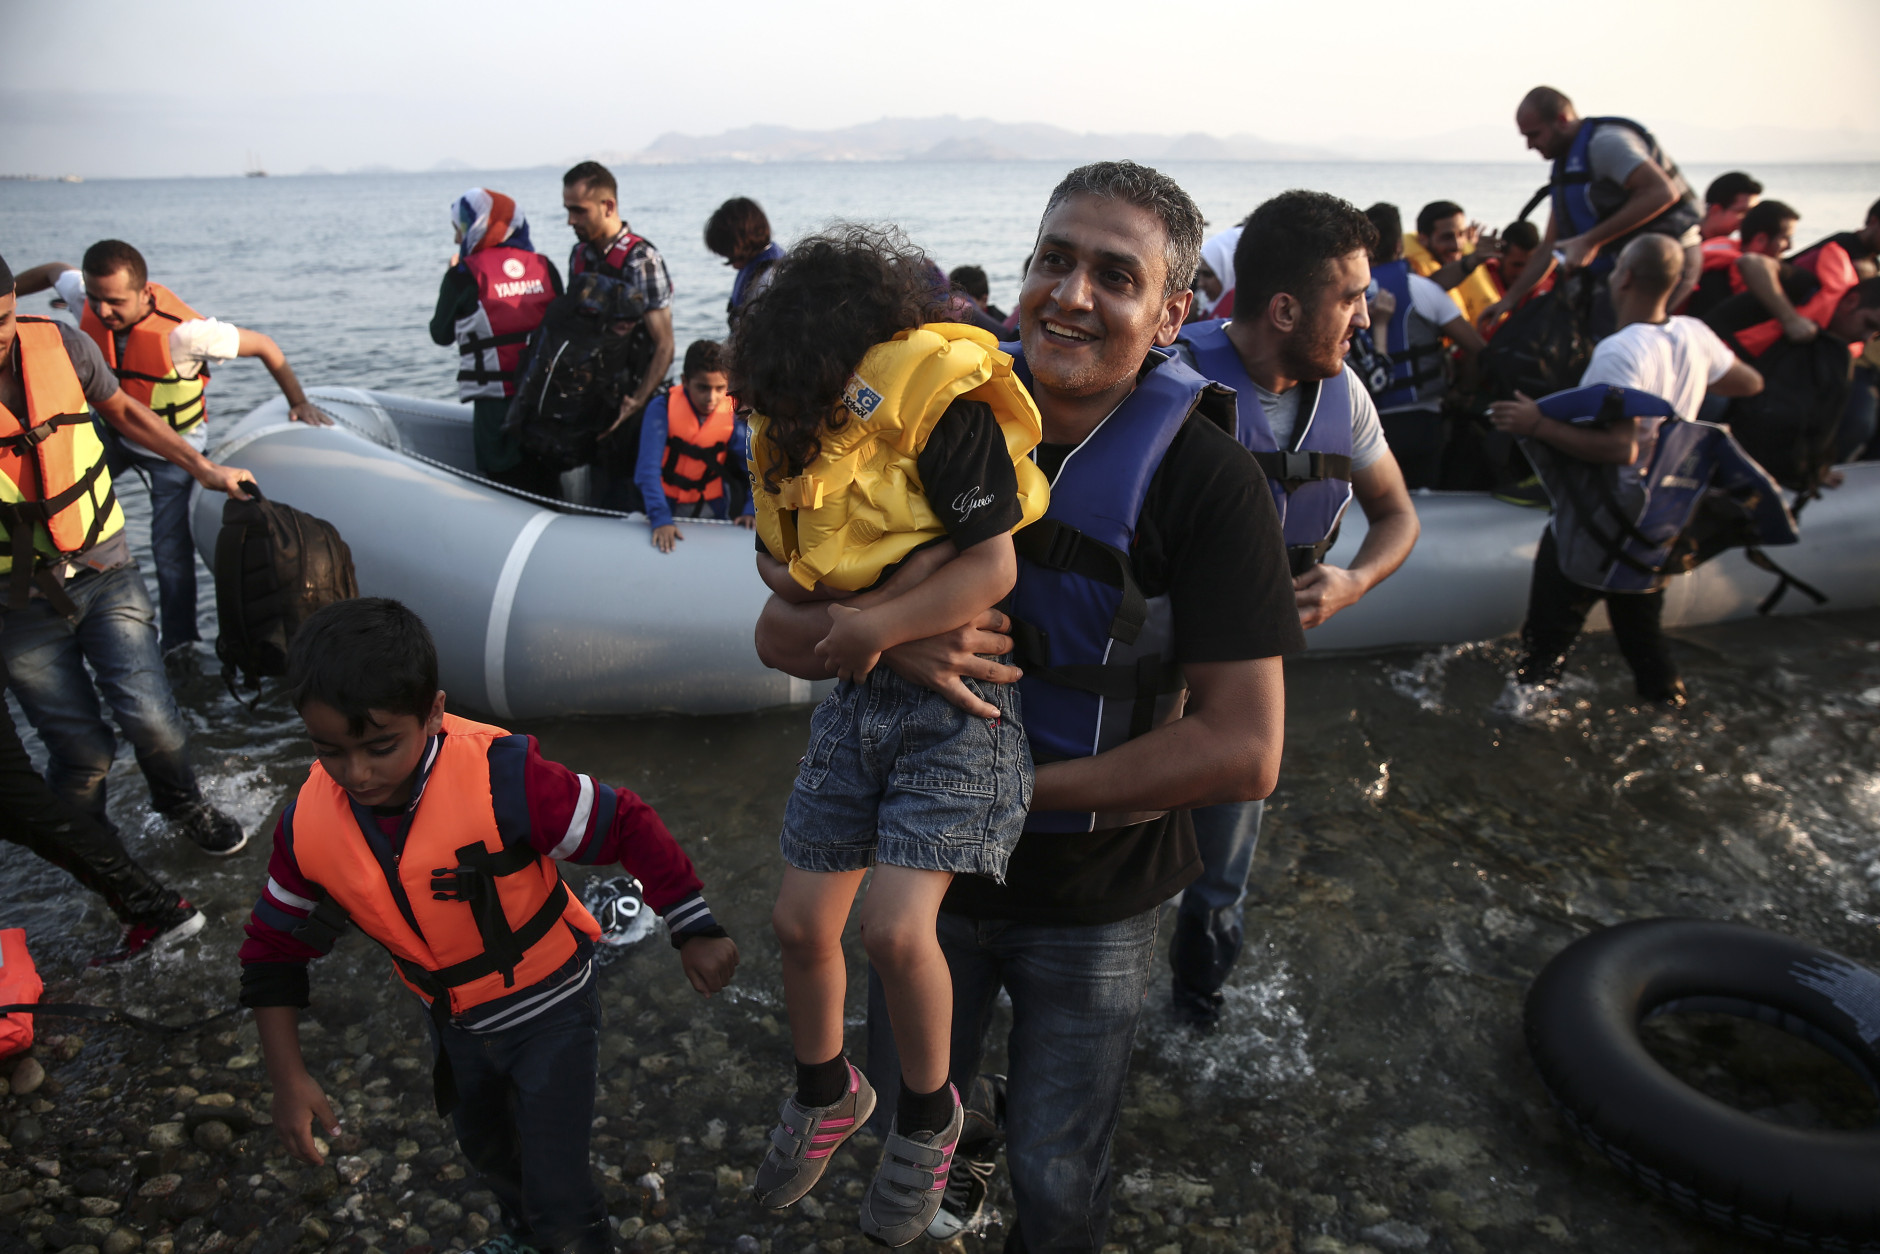 CRIZA IMIGRANŢILOR: Până la 70.000 de migranţi ar putea rămâne blocaţi în Grecia, avertizează Atena